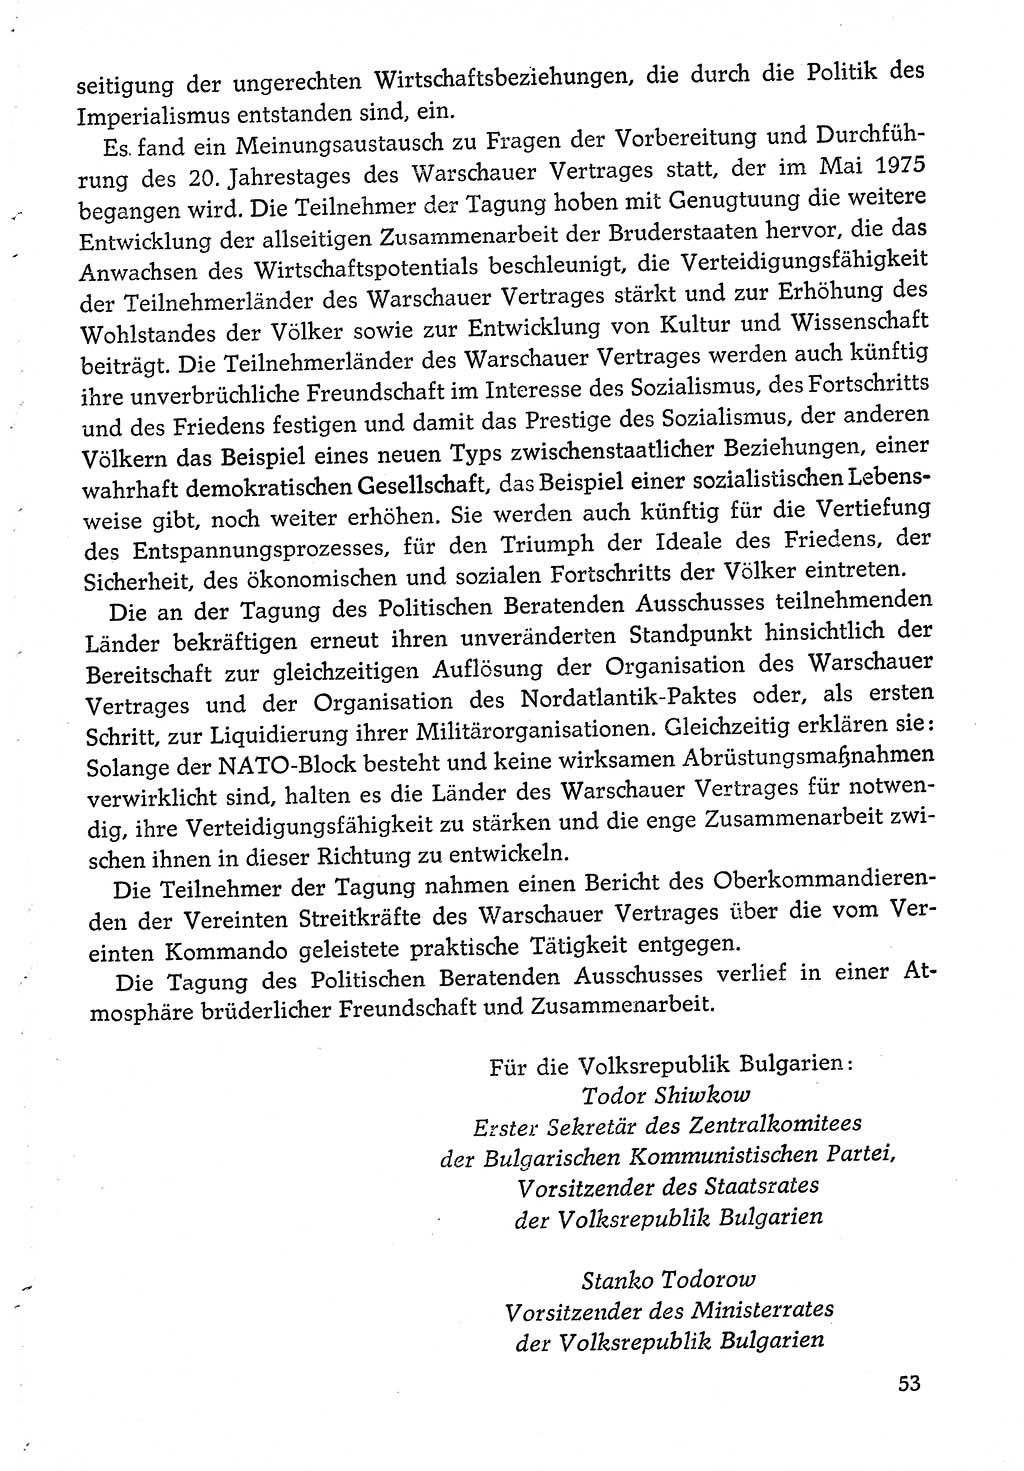 Dokumente der Sozialistischen Einheitspartei Deutschlands (SED) [Deutsche Demokratische Republik (DDR)] 1974-1975, Seite 53 (Dok. SED DDR 1978, Bd. ⅩⅤ, S. 53)